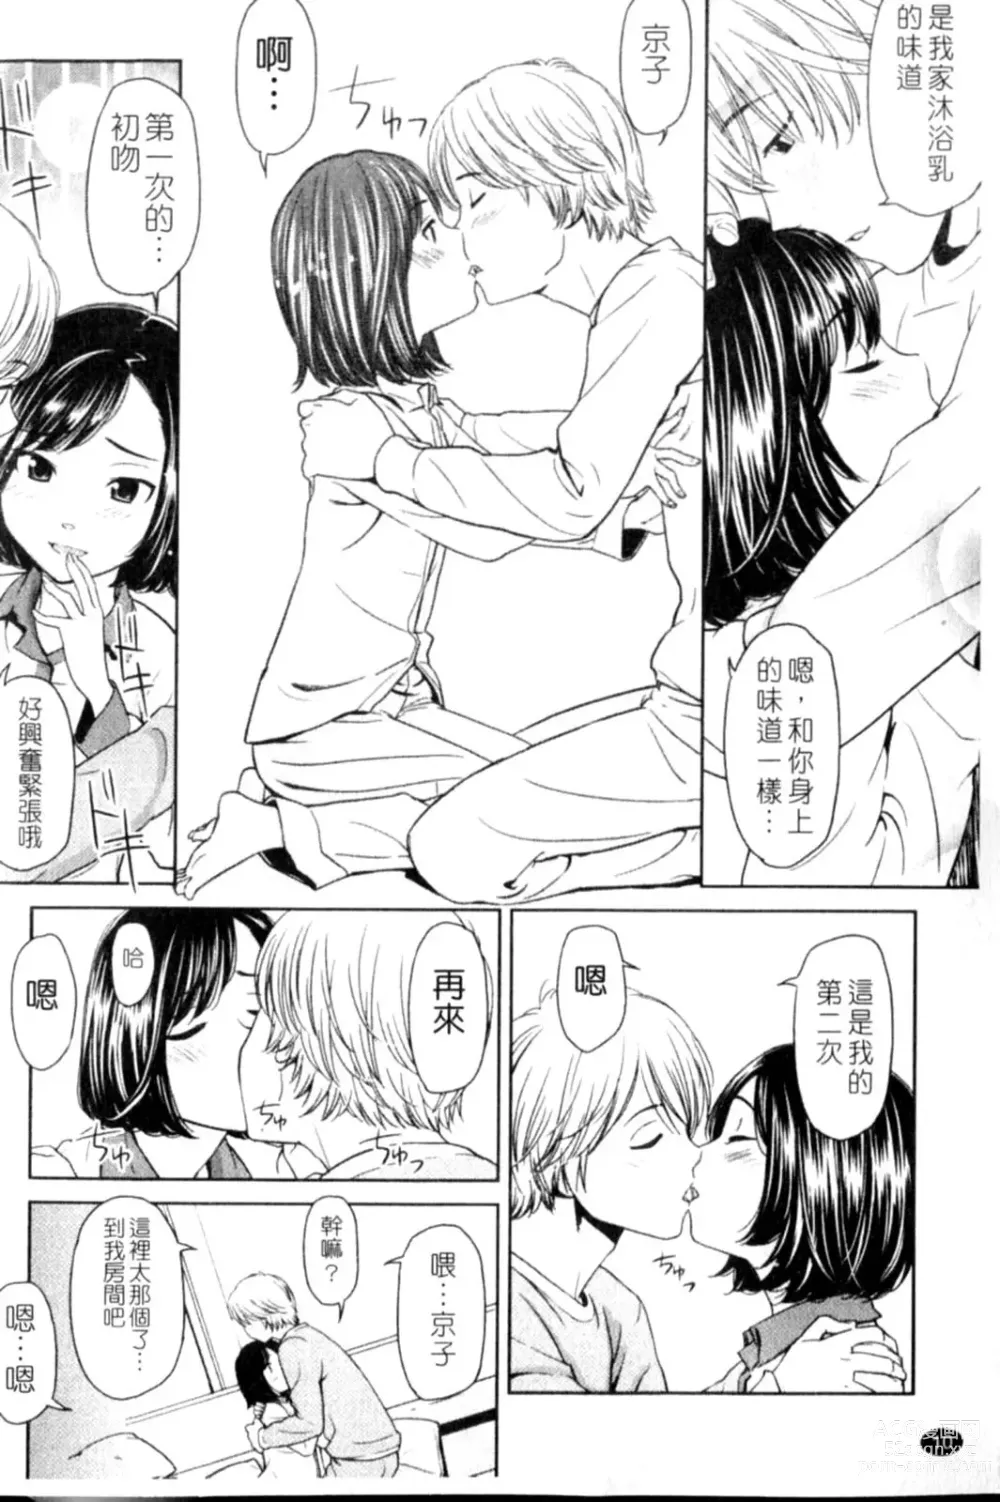 Page 10 of manga Porno Graffitti